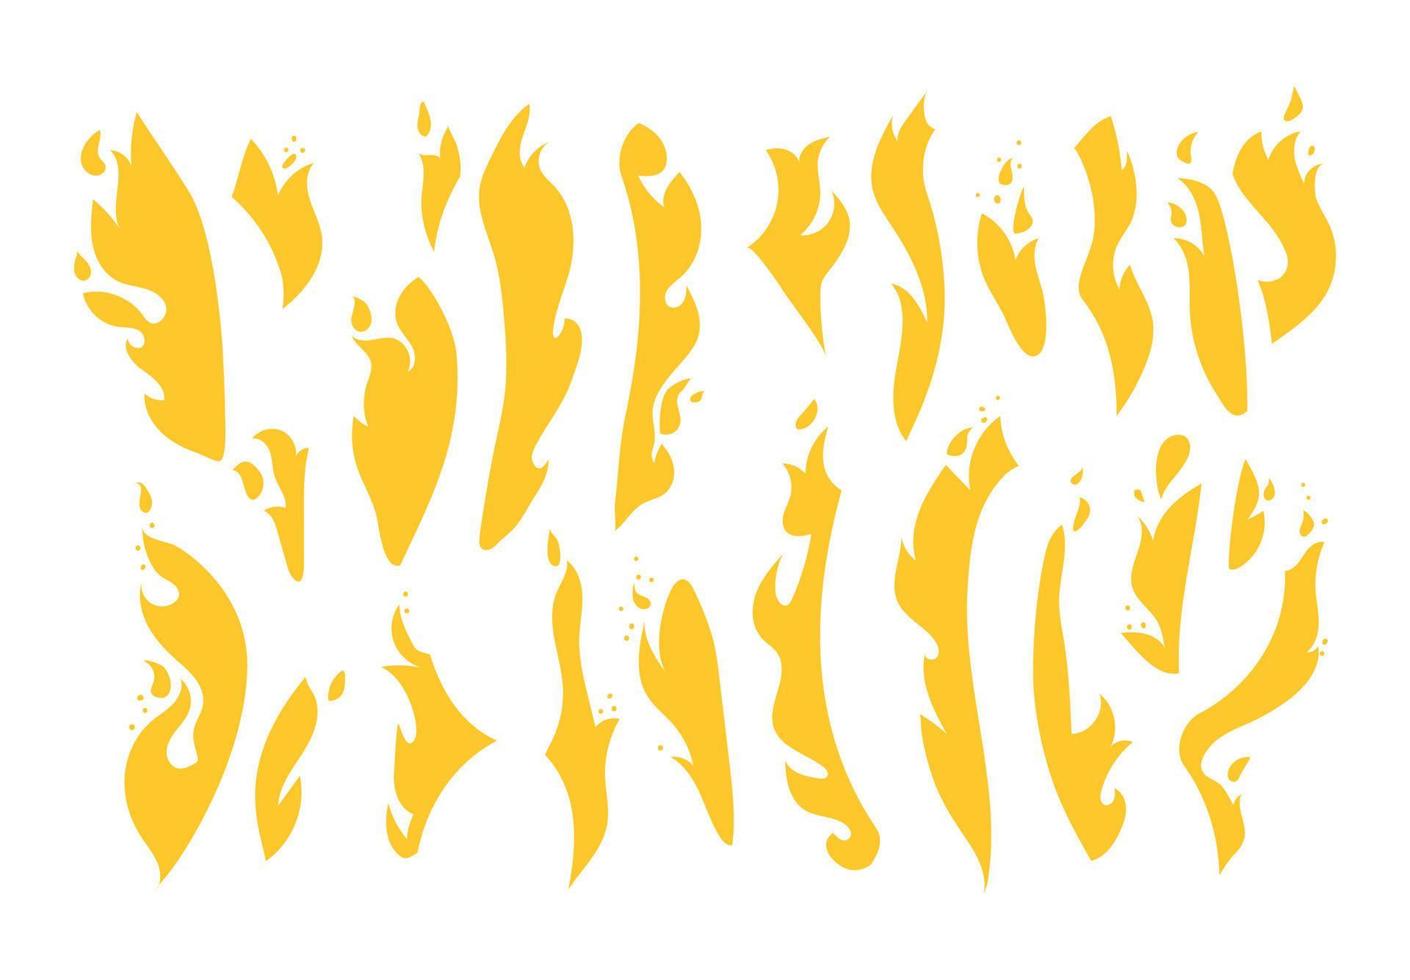 ein großer Satz gelber Flammen. Sammlung verschiedener Feuerarten. handgezeichnete Silhouetten eines lodernden Lagerfeuers. Vektor-Illustration isoliert auf weißem Hintergrund. vektor